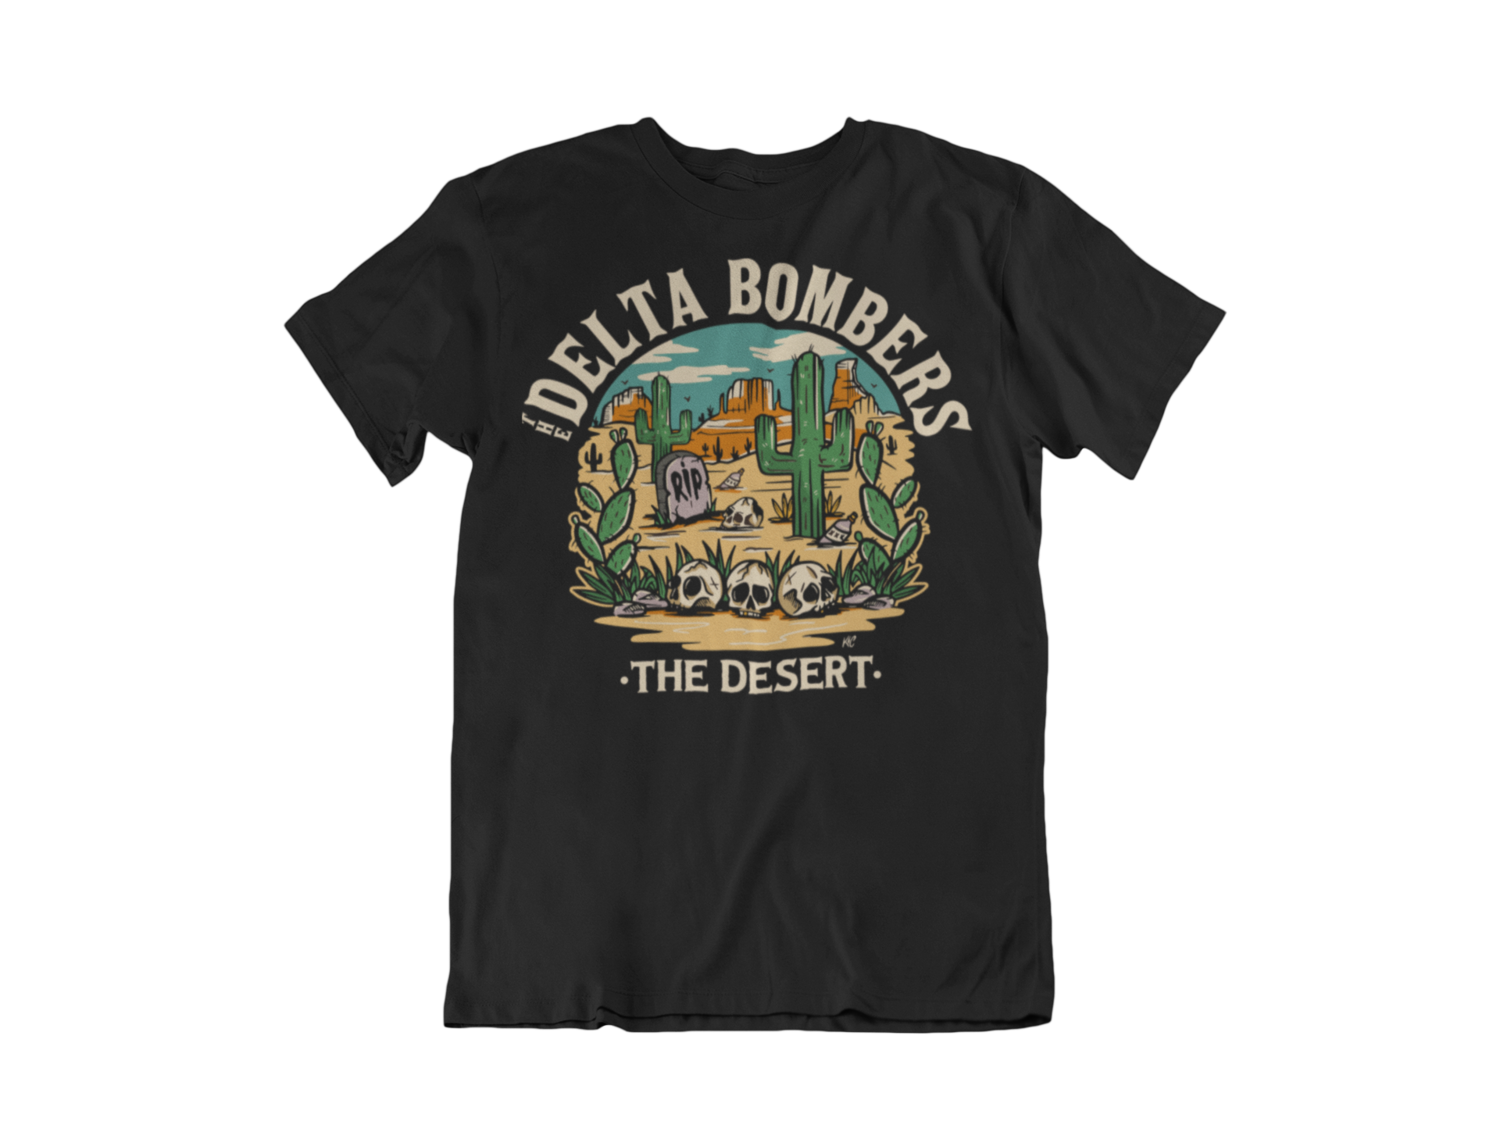 THE DELTA BOMBERS T-SHIRT "THE DESERT" for MEN